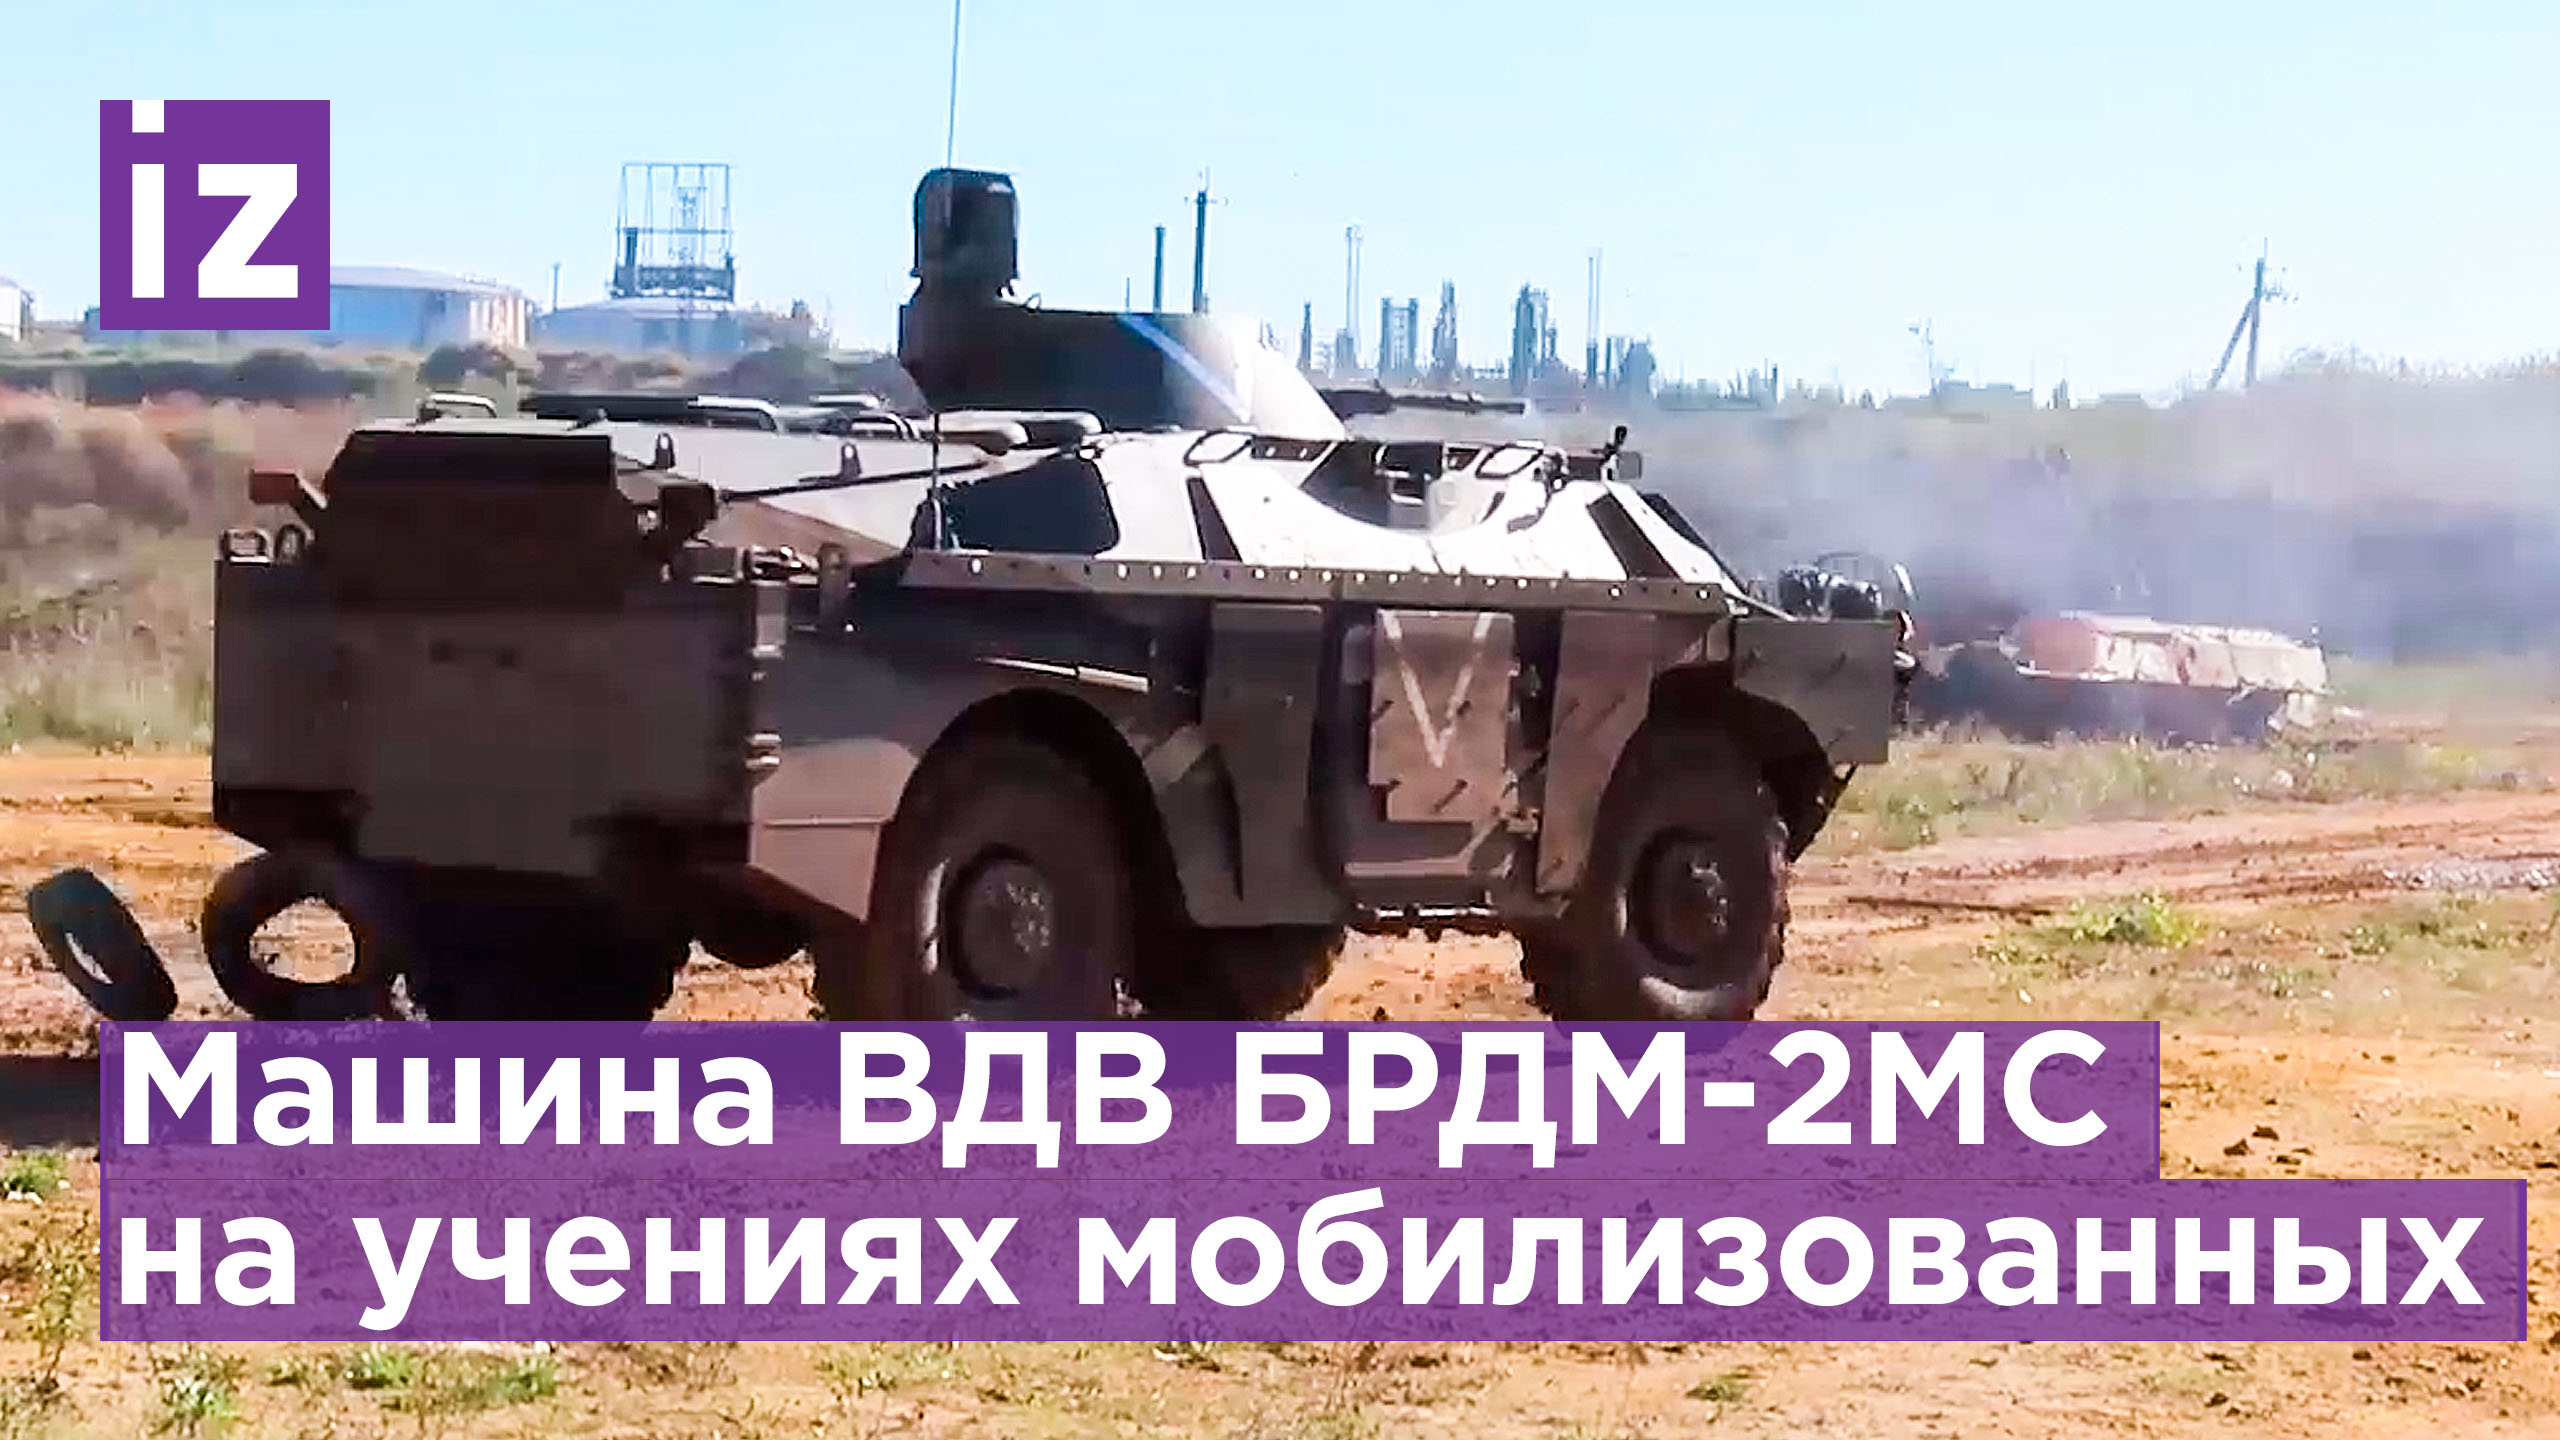 Применение машин ВДВ БРДМ-2МС на полигоне в зоне СВО для подготовки мобилизованных военнослужащих